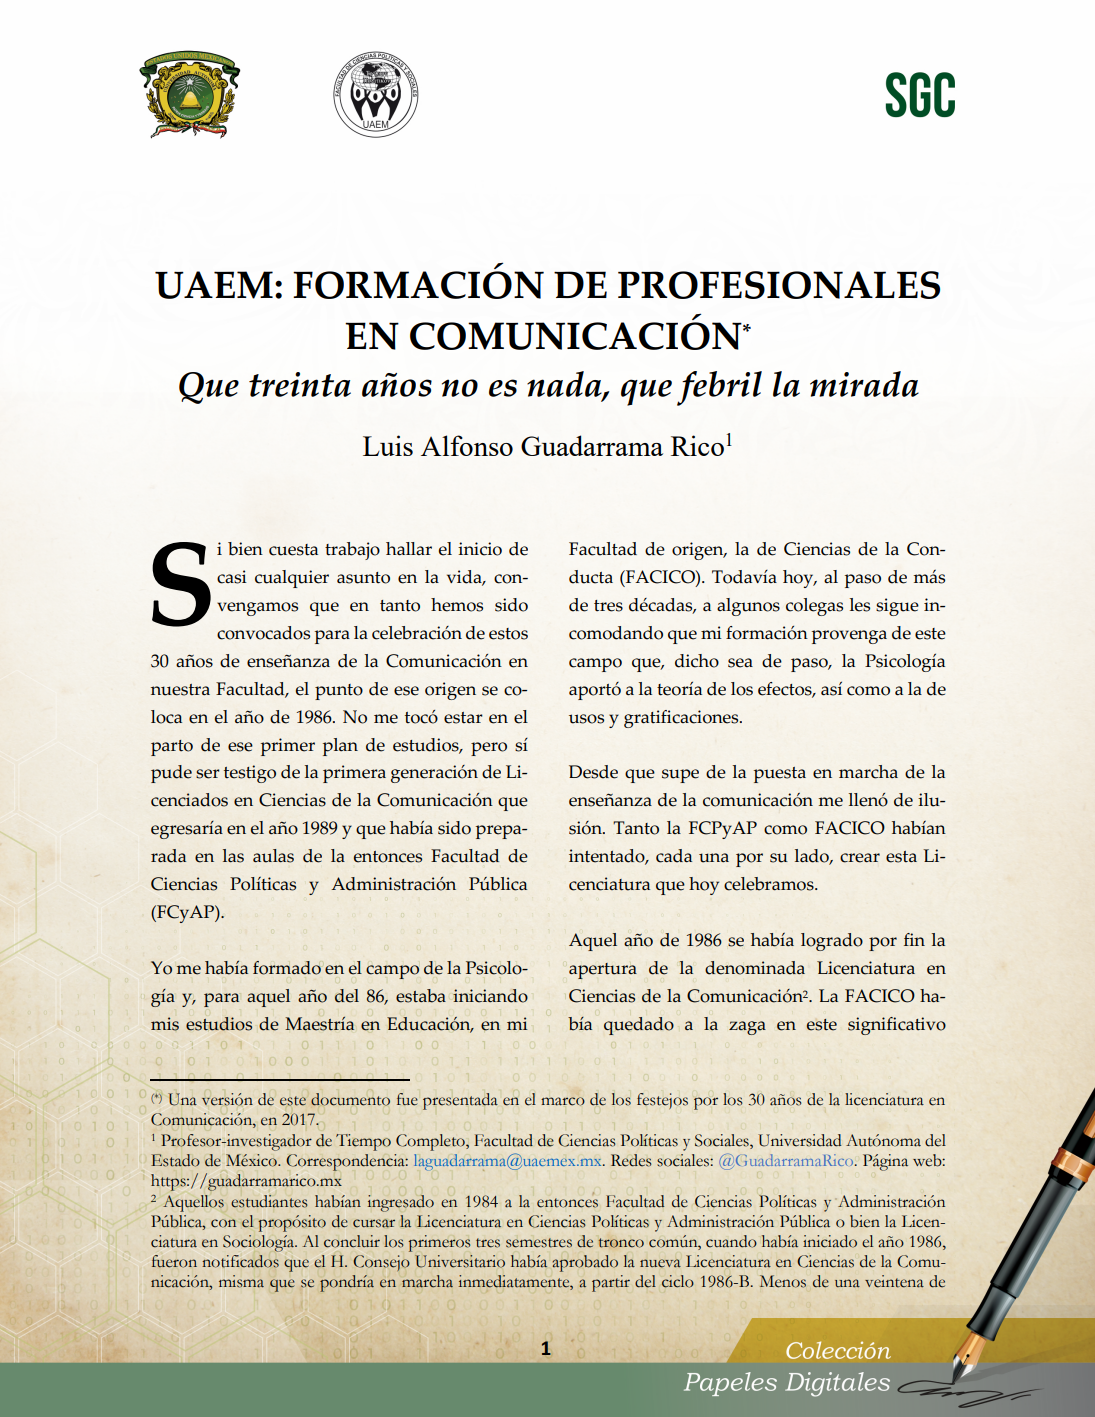 Luis Alfonso Guadarrama Rico Proyectos De Investigación En Familias Y Medios De Comunicación 3516